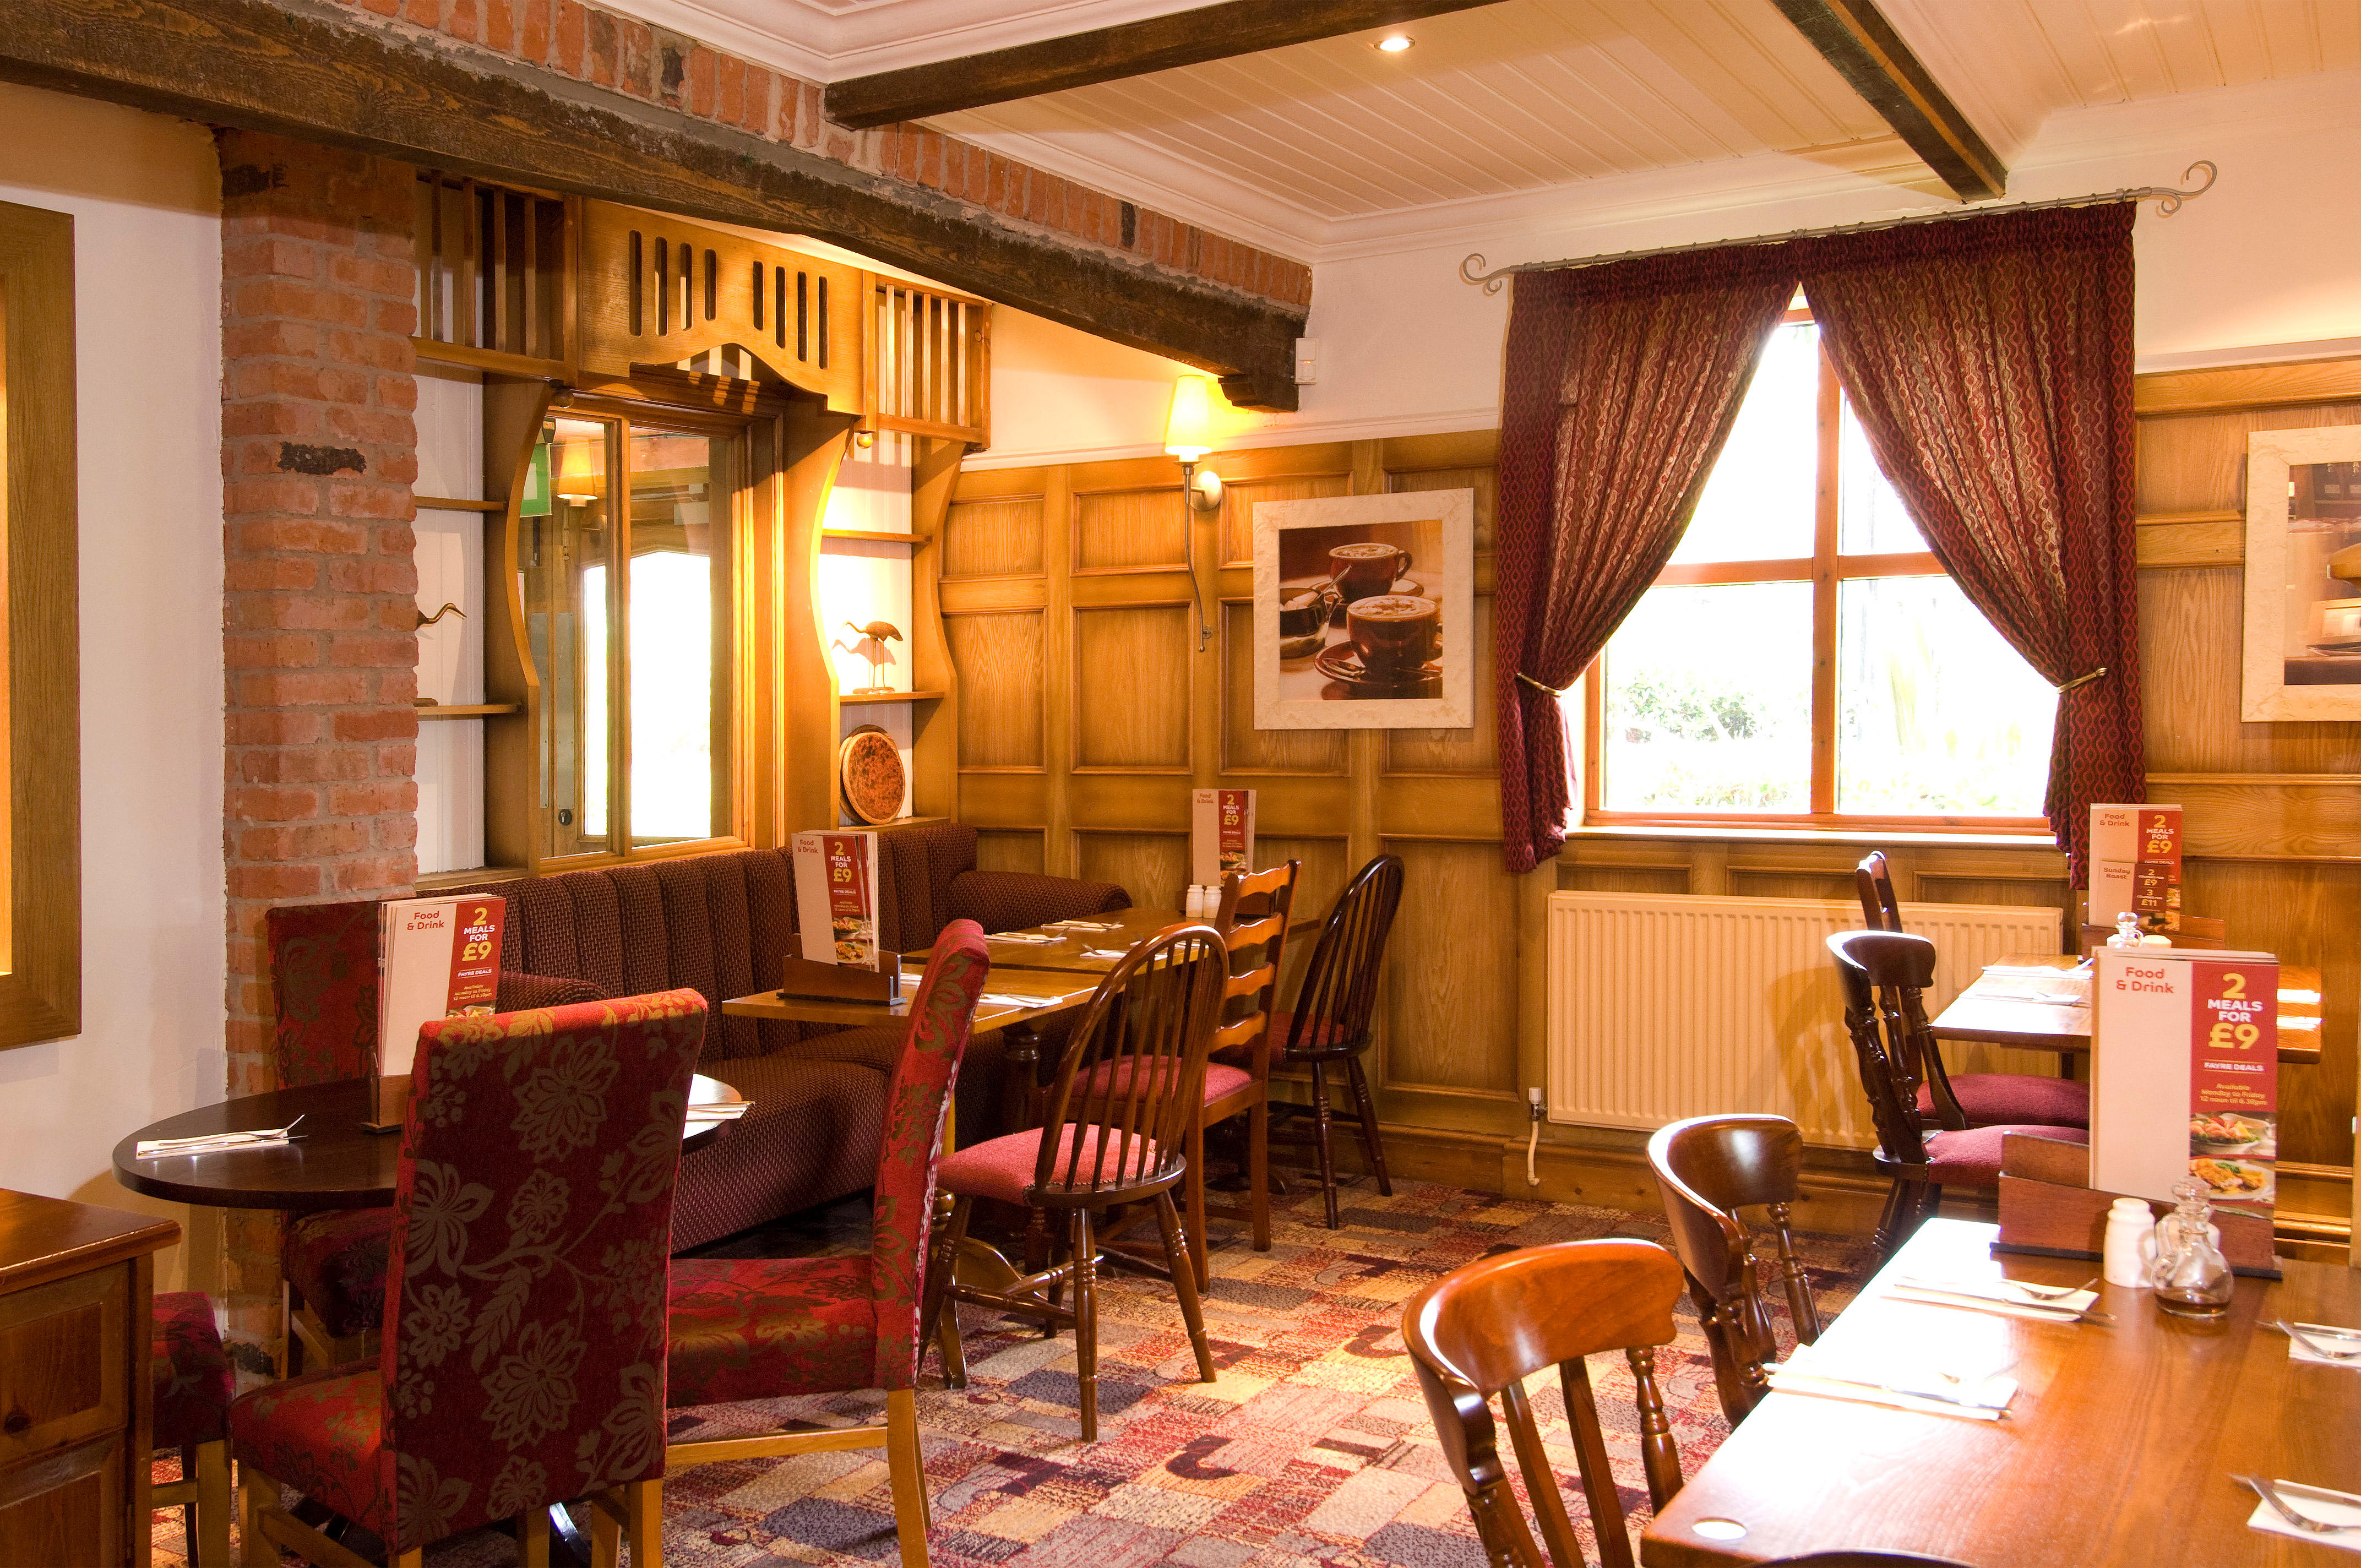 Brewers Fayre restaurant Premier Inn Bradford North (Bingley) hotel Keighley 03337 773937